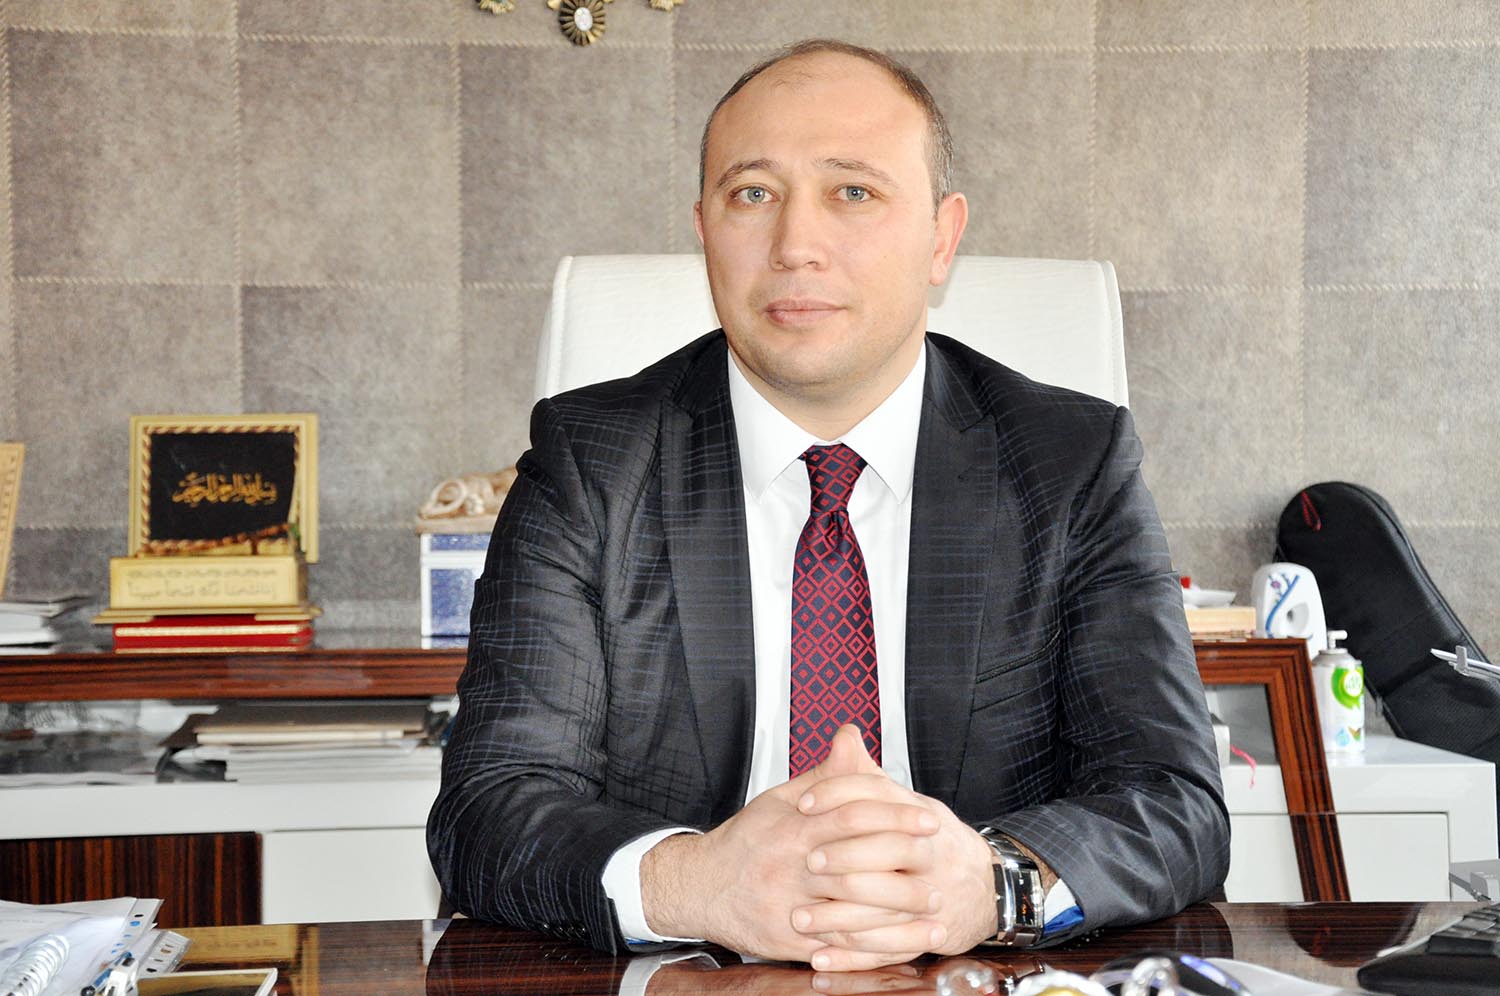 Baloğlu, Kırıkkale Üniversitesi’nin personel alım ilanını eleştirdi - Kırıkkale Haber, Son Dakika Kırıkkale Haberleri